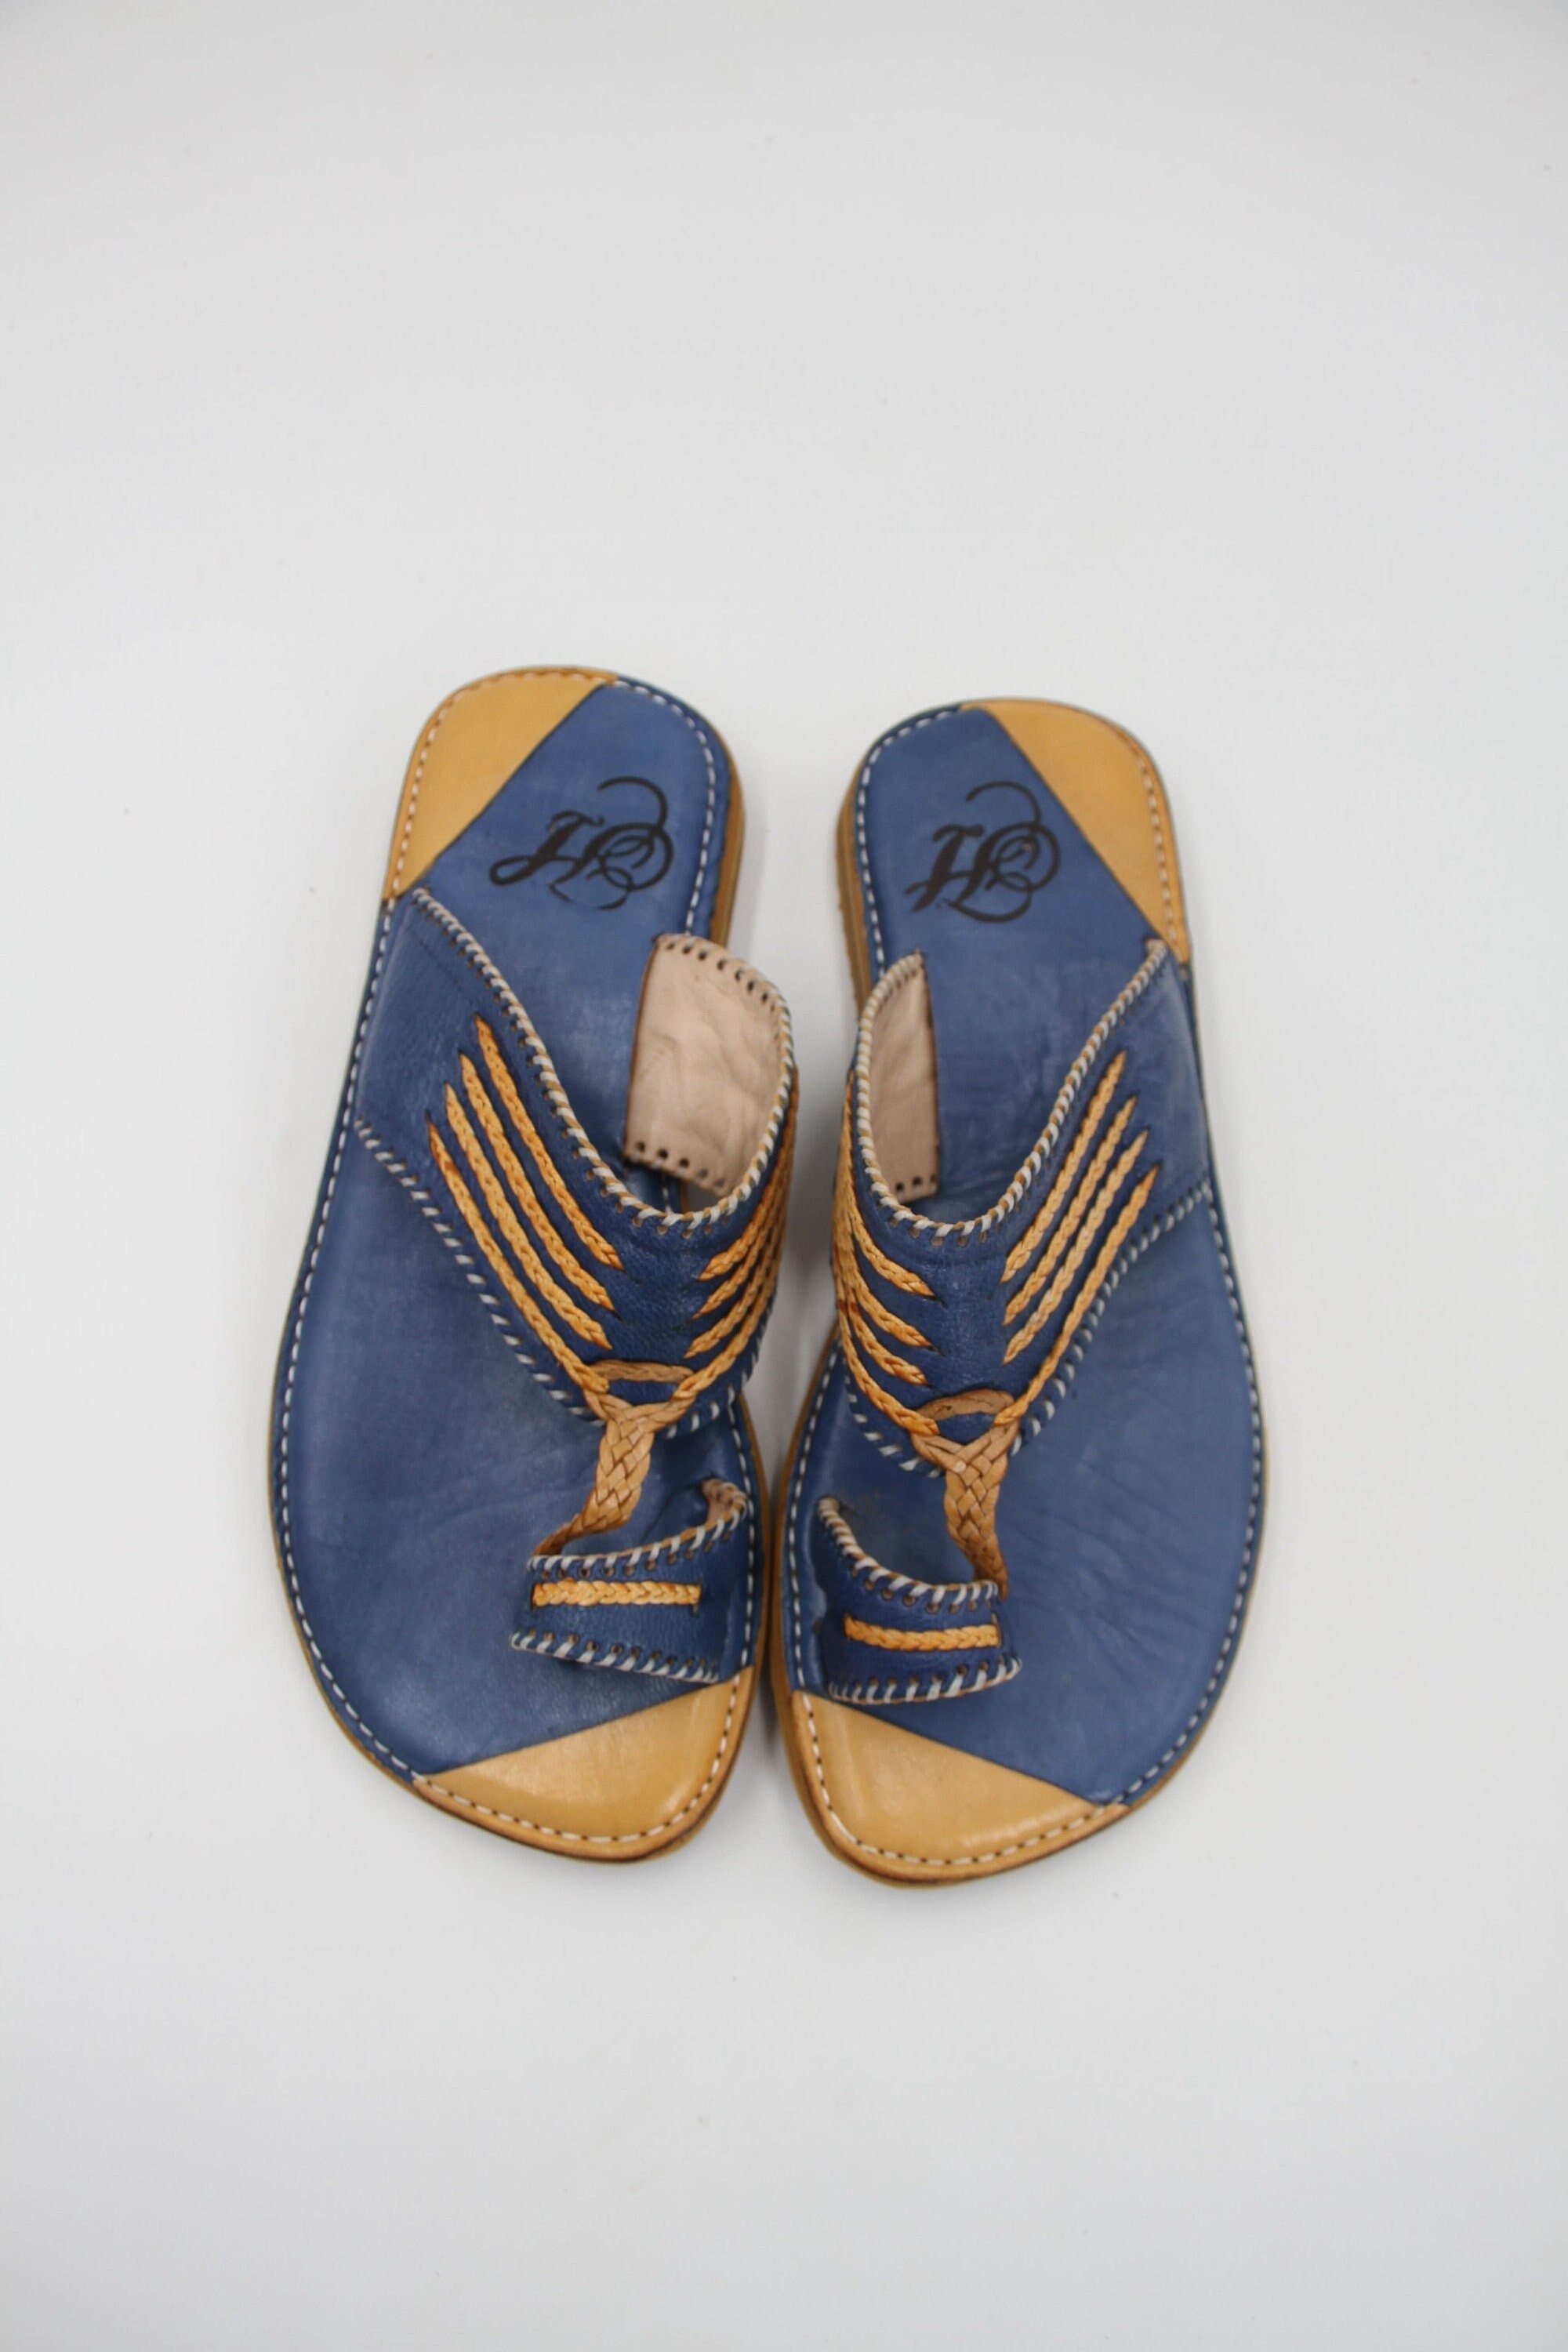 Zapatos arabes - España